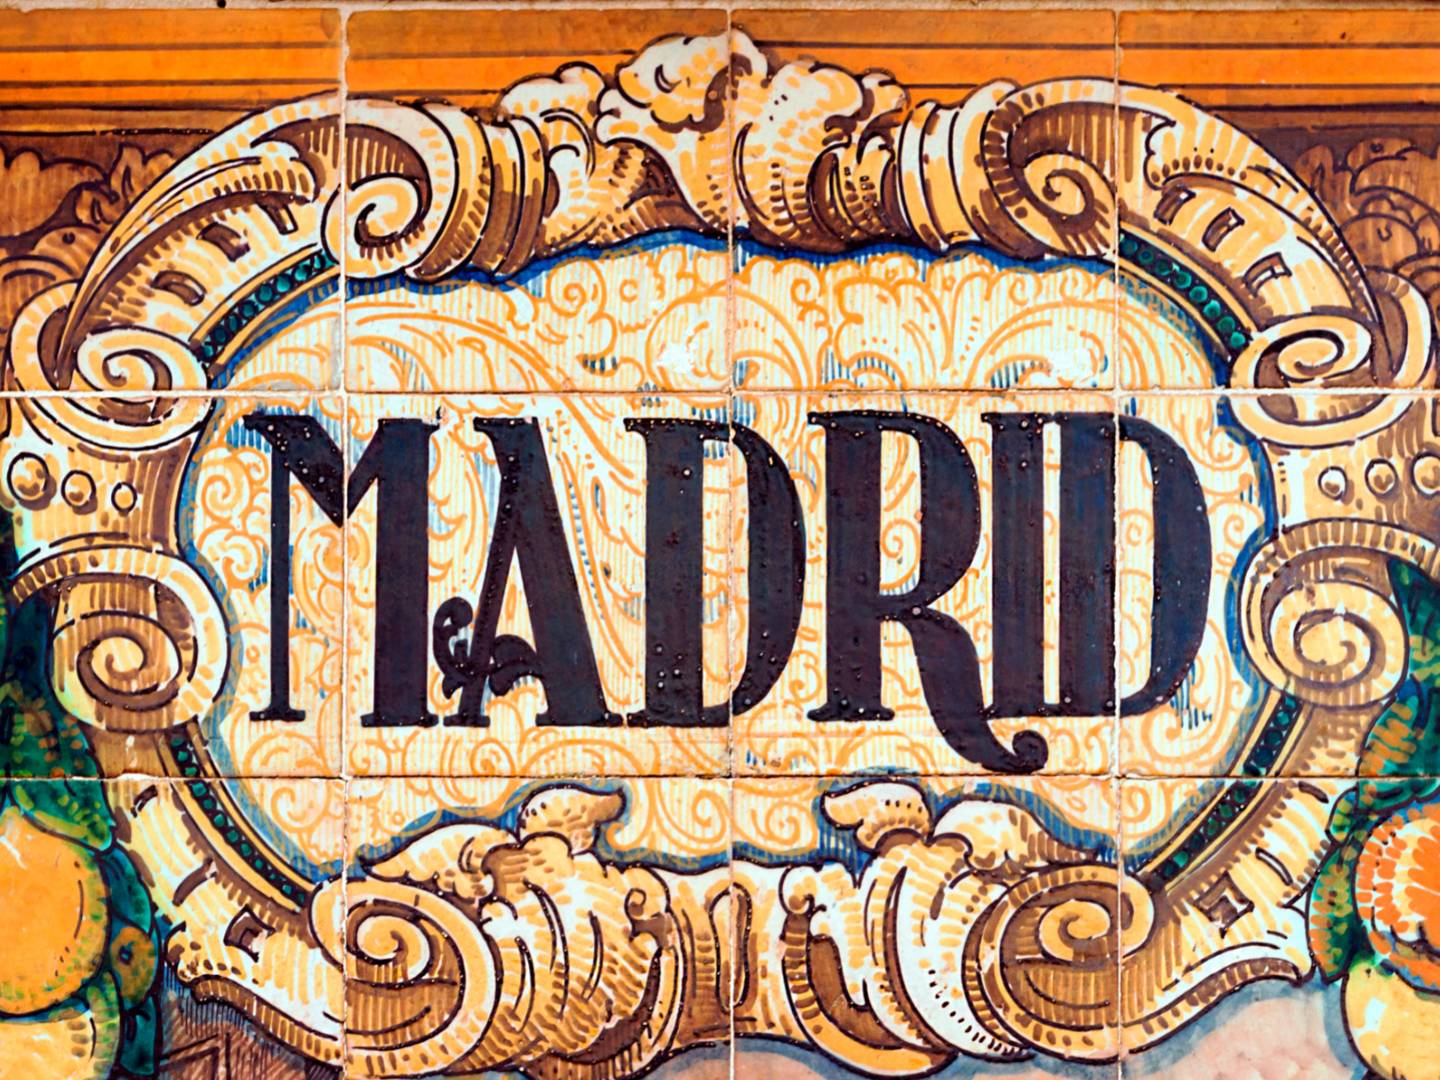 Madrid sign